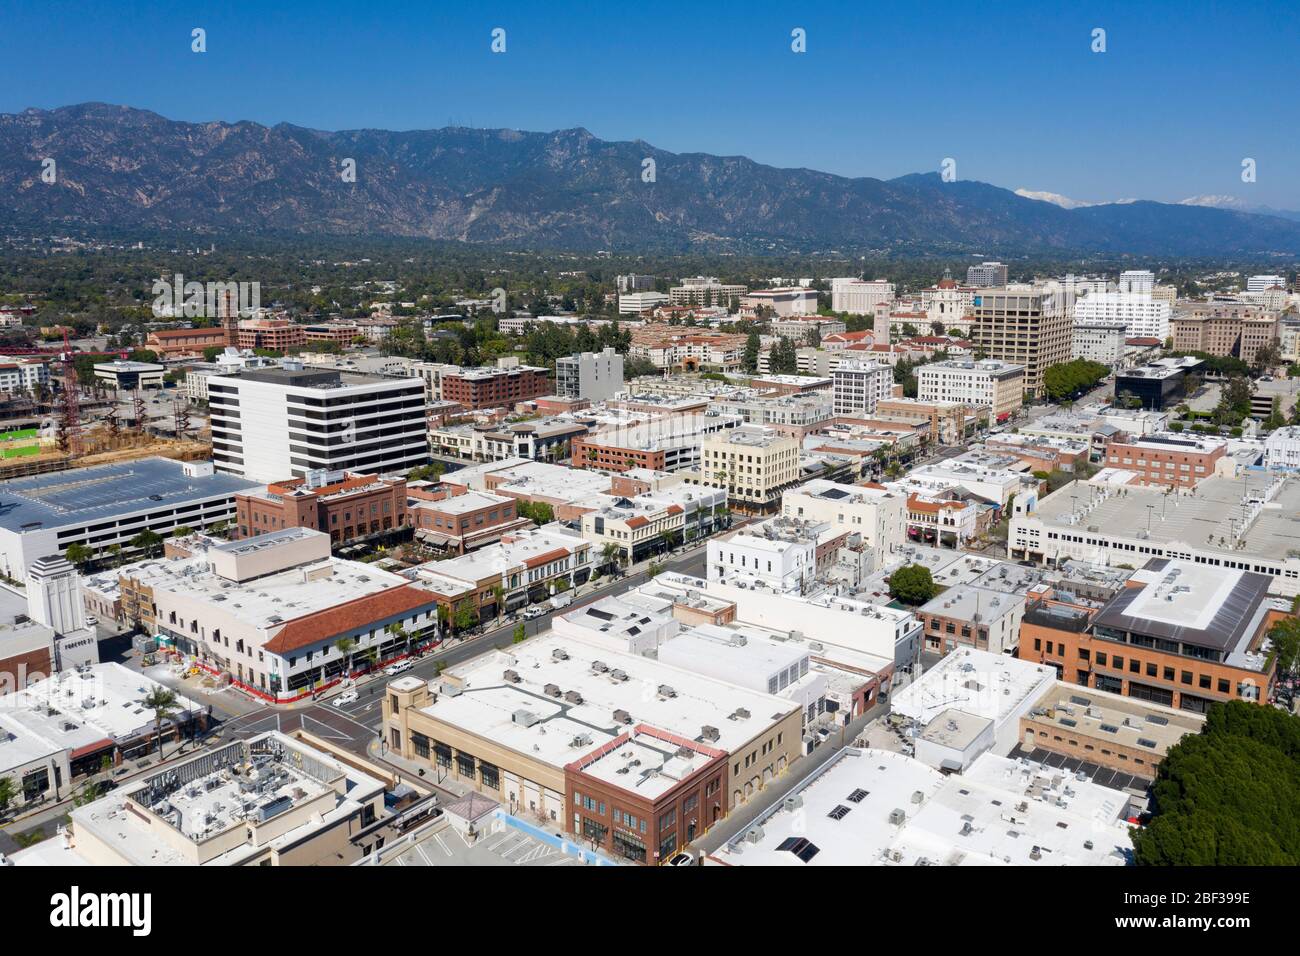 Vista aerea sul centro di Pasadena, California, in una giornata limpida con le San Gabriel Mountains in lontananza Foto Stock